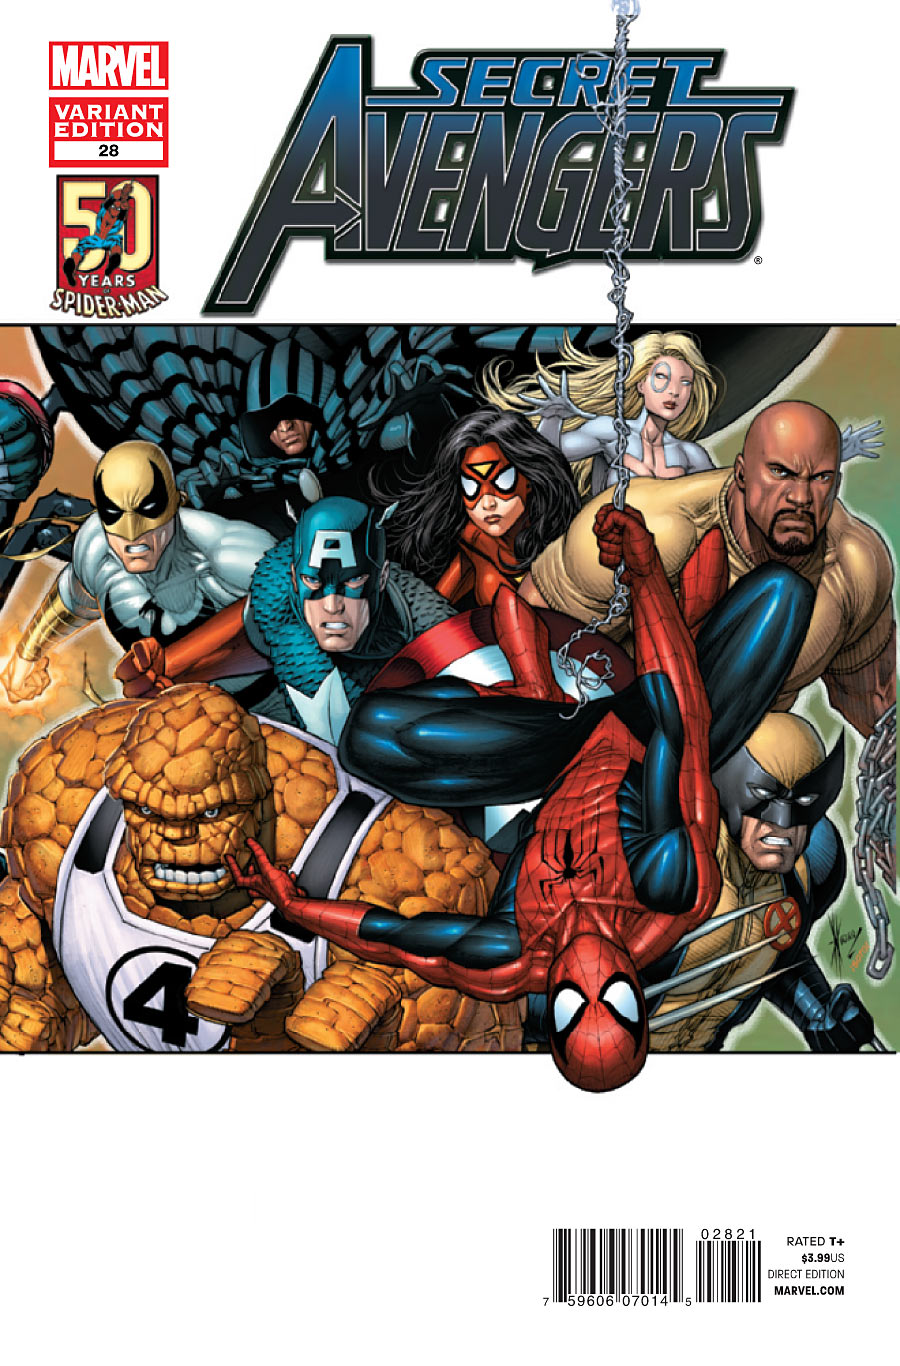 Secret Avengers 28 variant cover